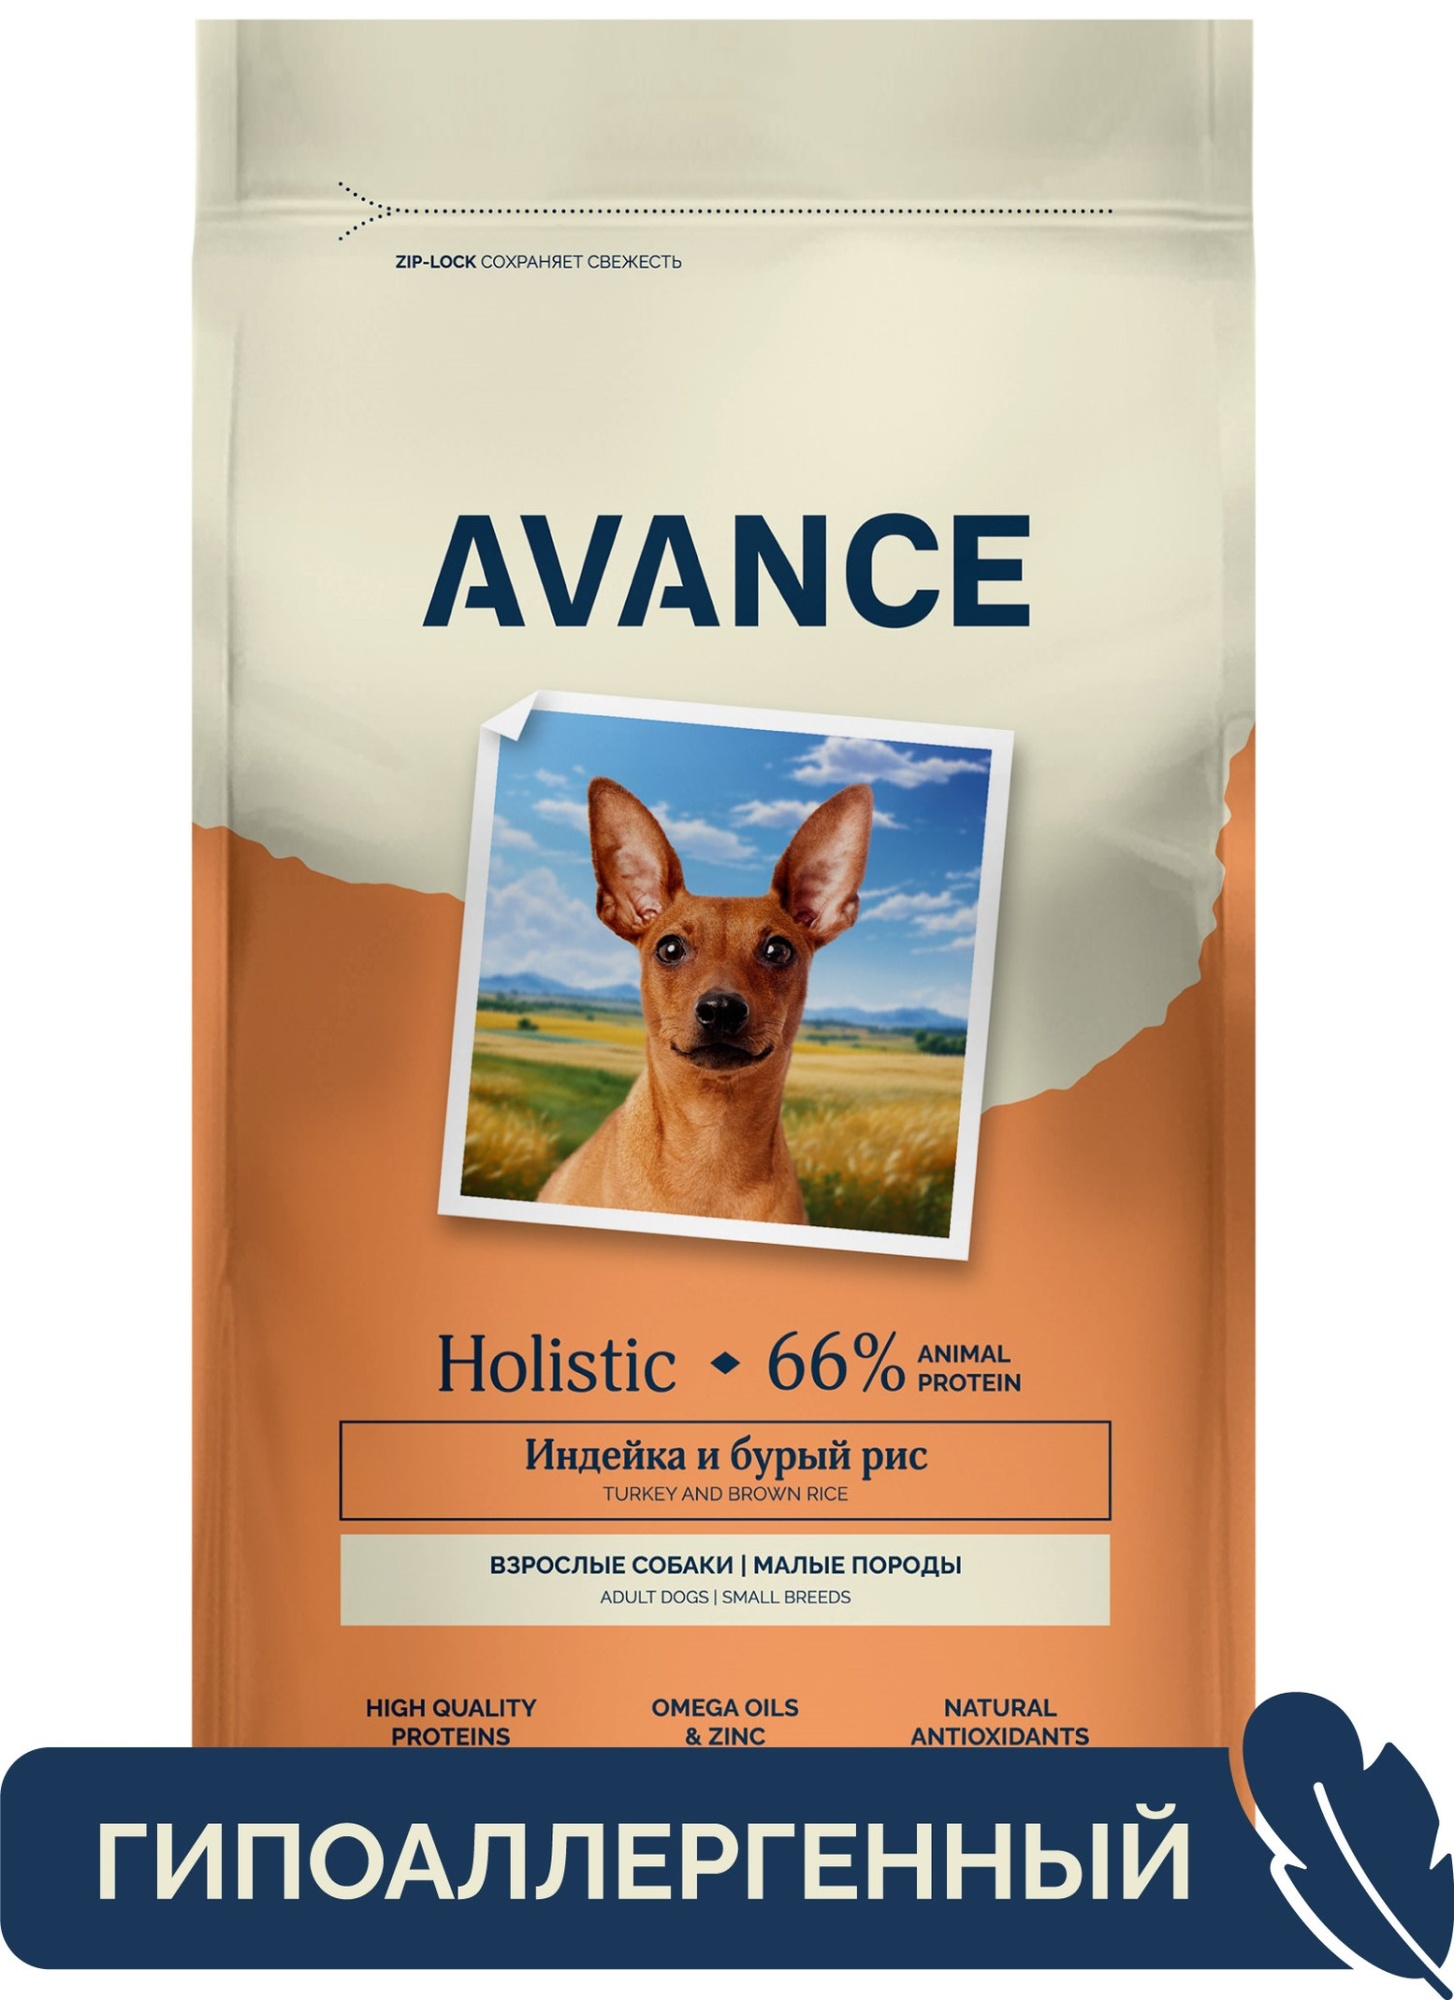 Сухой корм для собак AVANCE holistic, для малых пород, с индейкой и бурым рисом, 3 кг